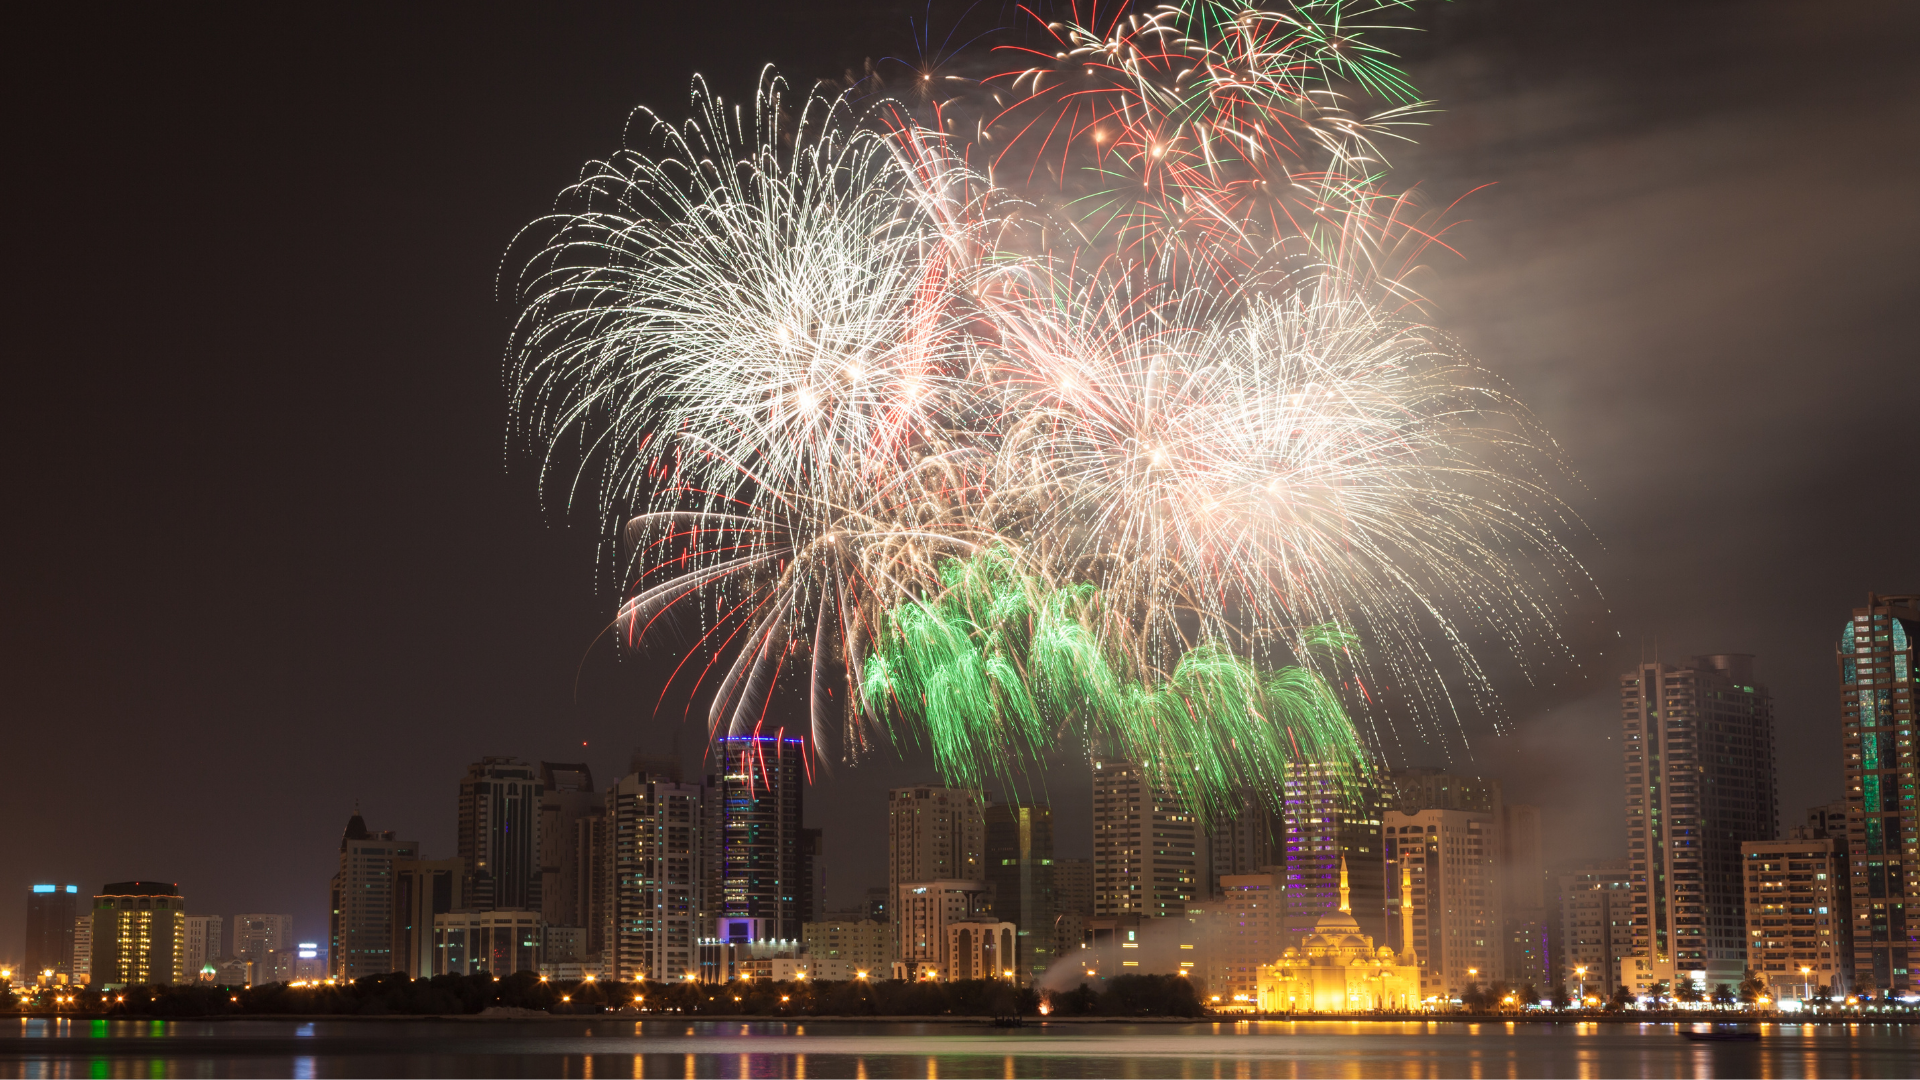 UAE's National Day Celebration